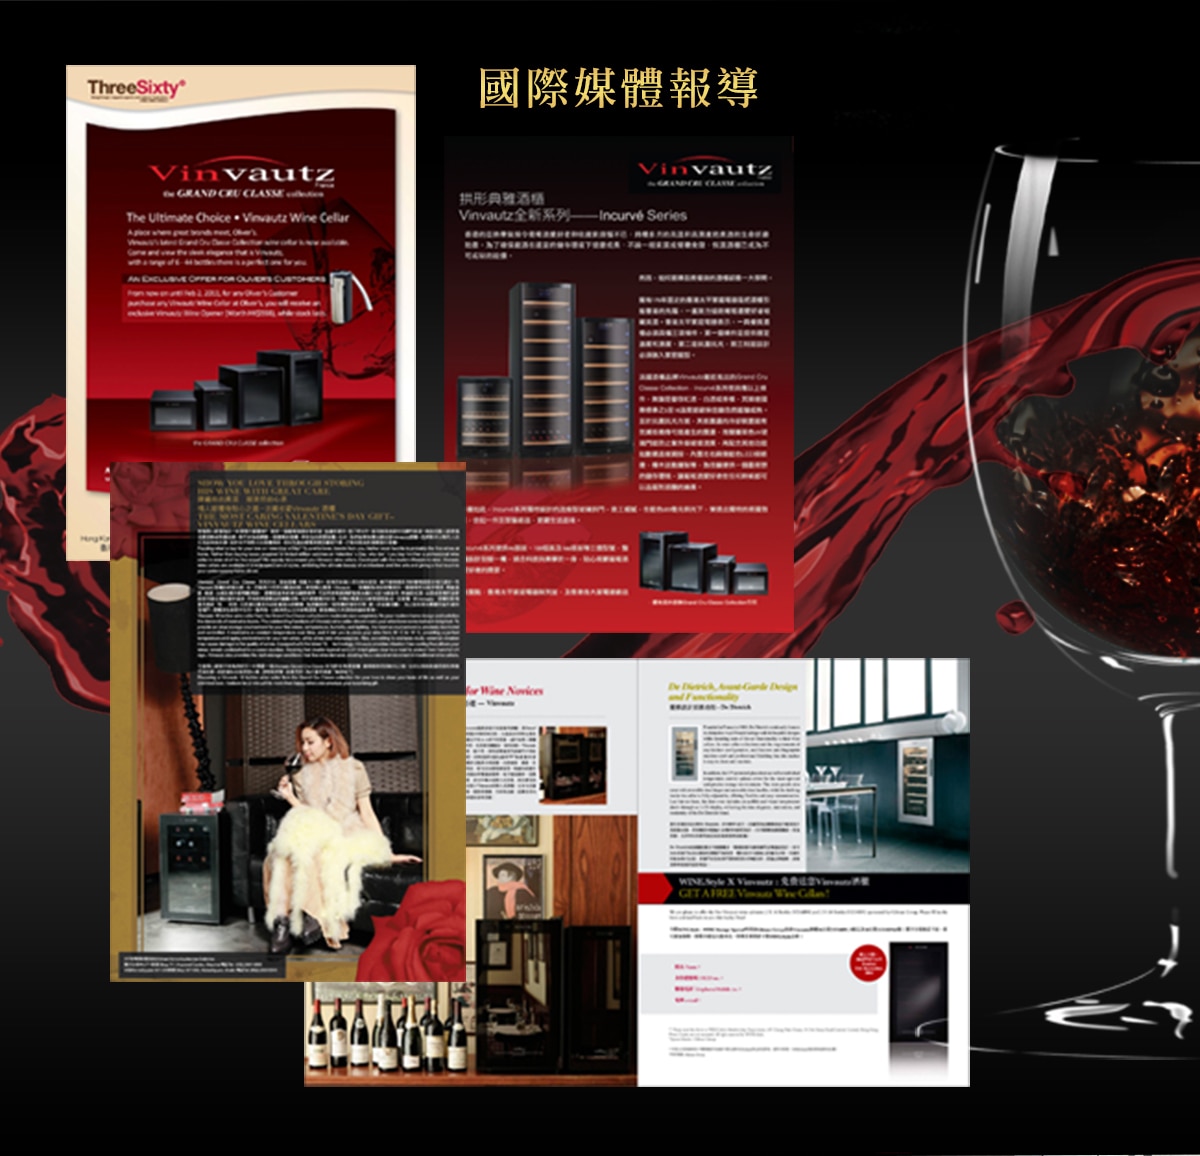 Vinvautz 名望 12 瓶電子溫控單溫酒櫃 VZ12ABT，具有國際媒體報導，配有防震櫸木酒架，商品尺寸61.5*25.5*51.2CM。